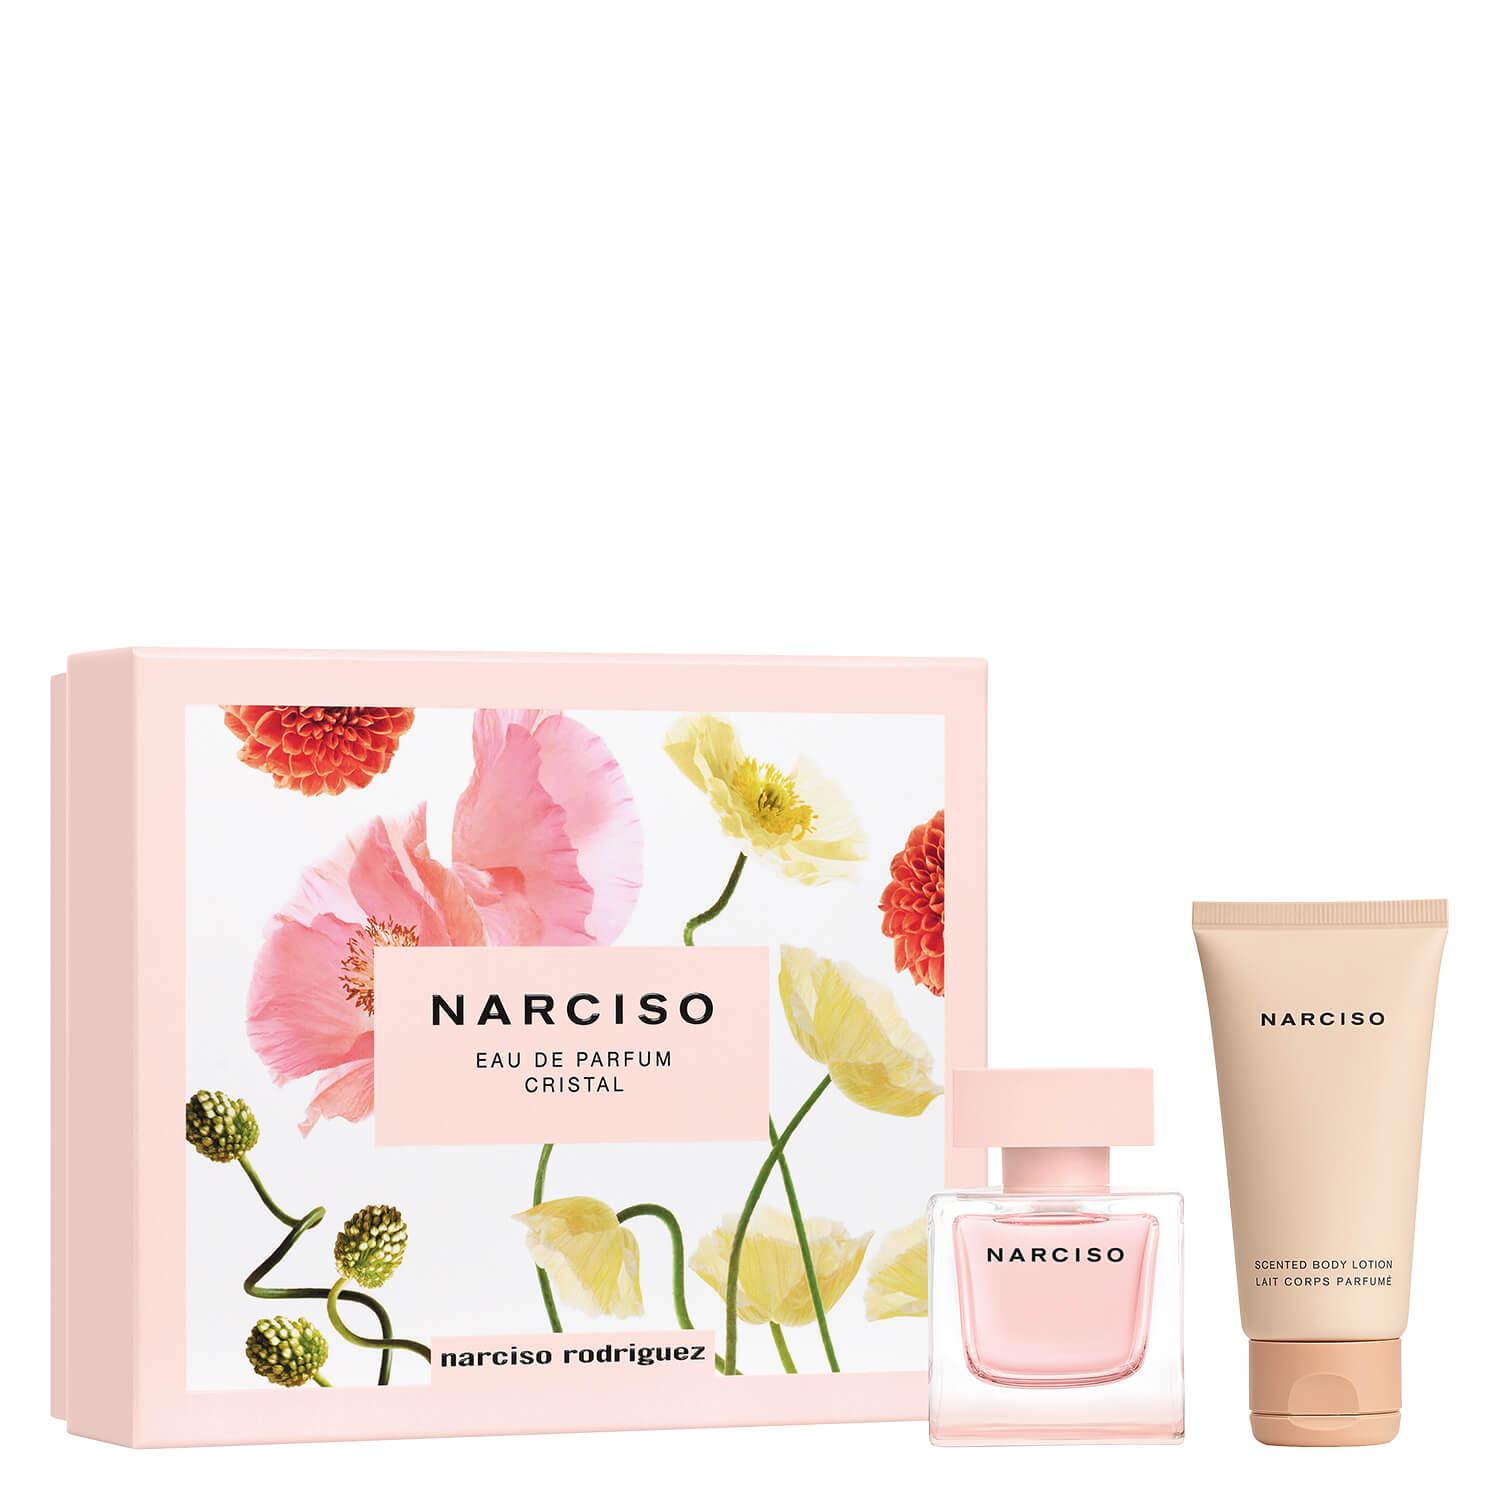 Narciso – Eau de Parfum Cristal Spring Set